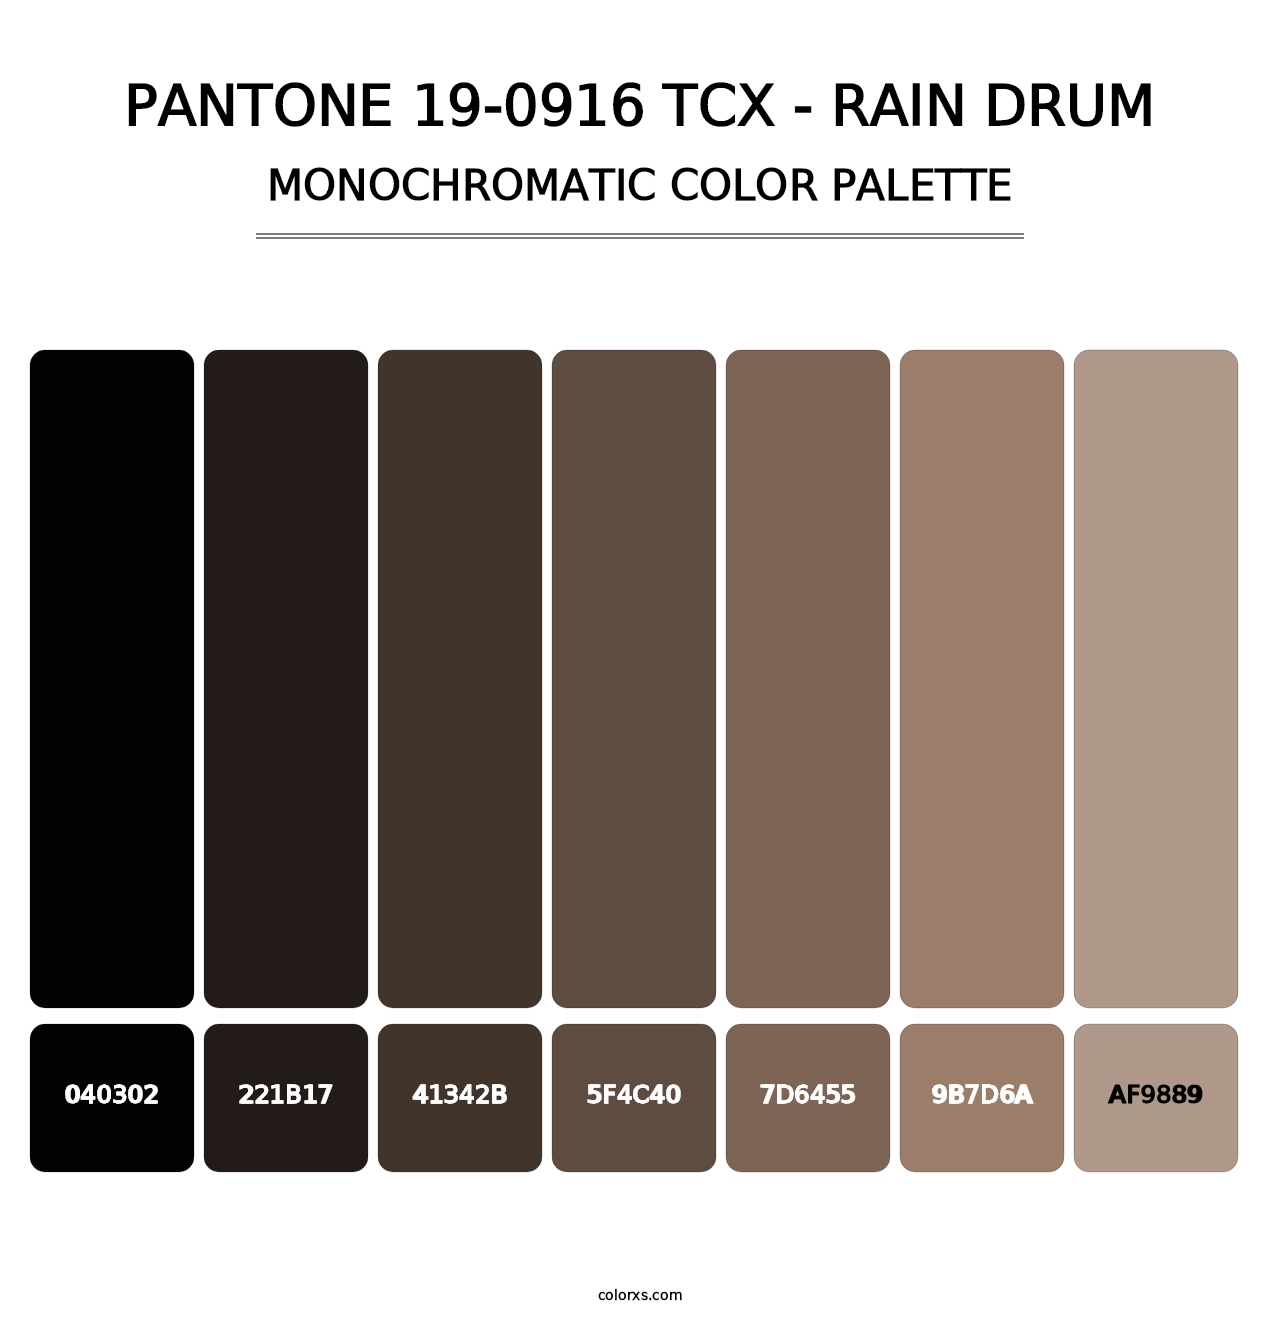 PANTONE 19-0916 TCX - Rain Drum - Monochromatic Color Palette